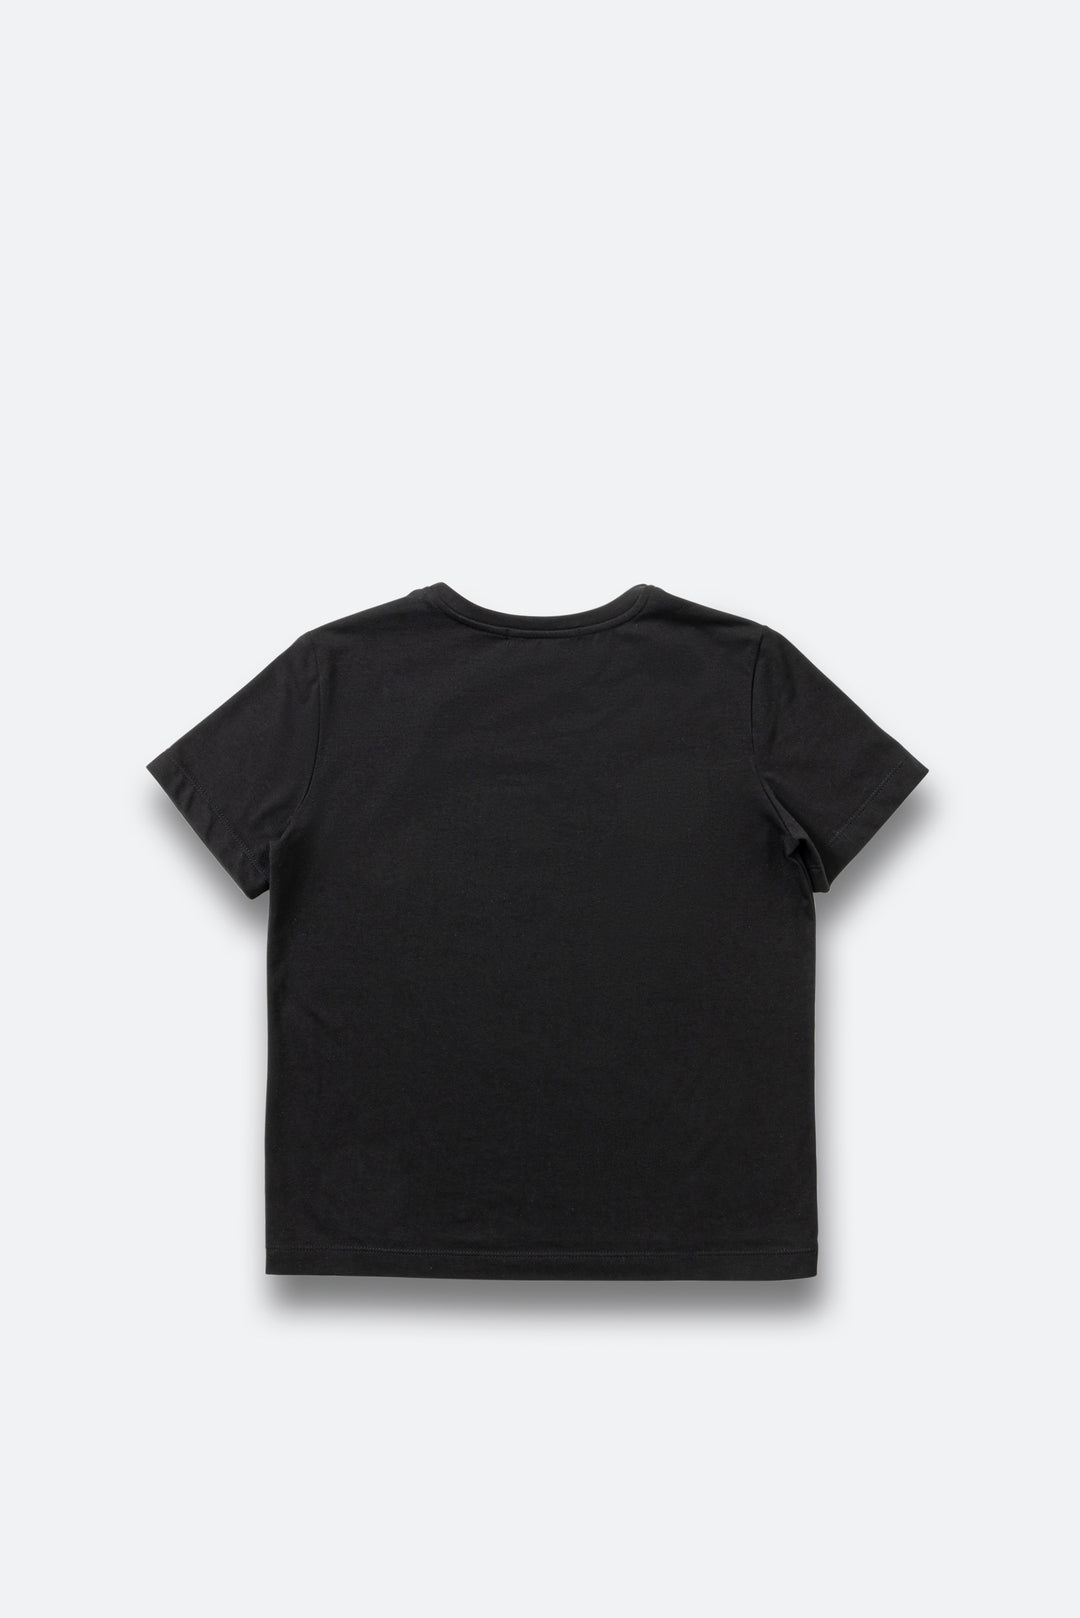 T-shirt con logo Planetarium Black